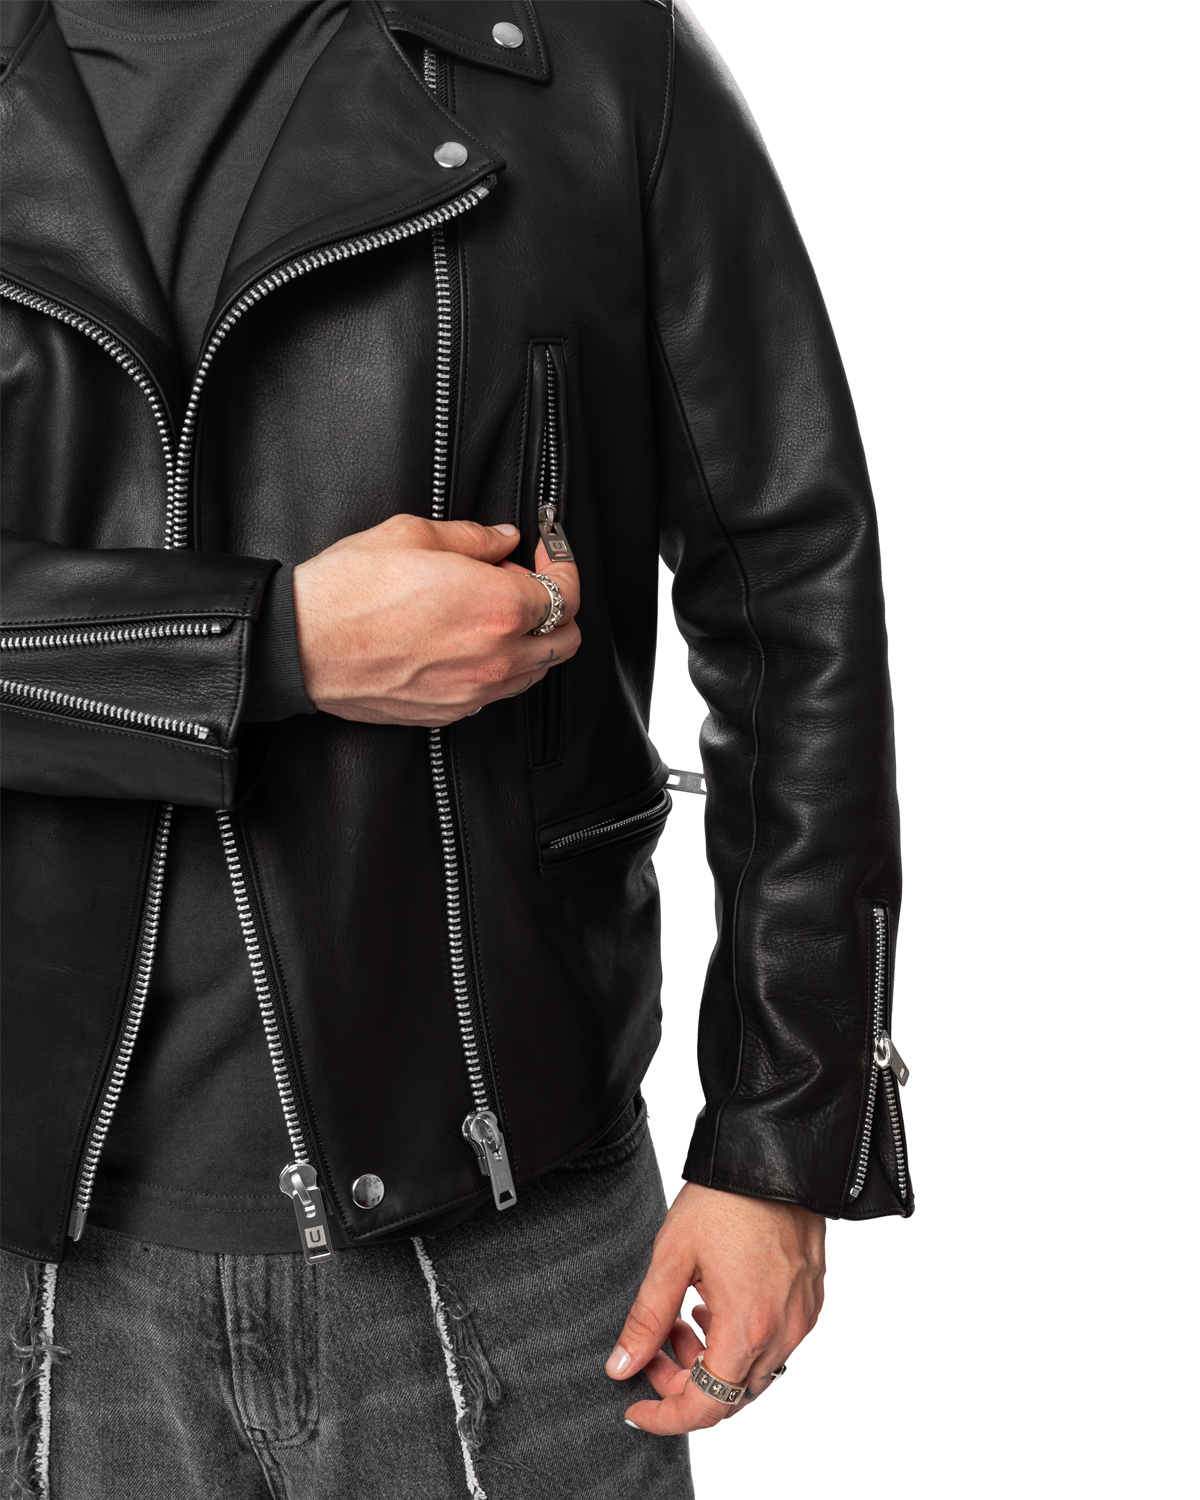 UNDERCOVER UC2C9204 Leather Biker Jacket – Black LIKELIHOOD